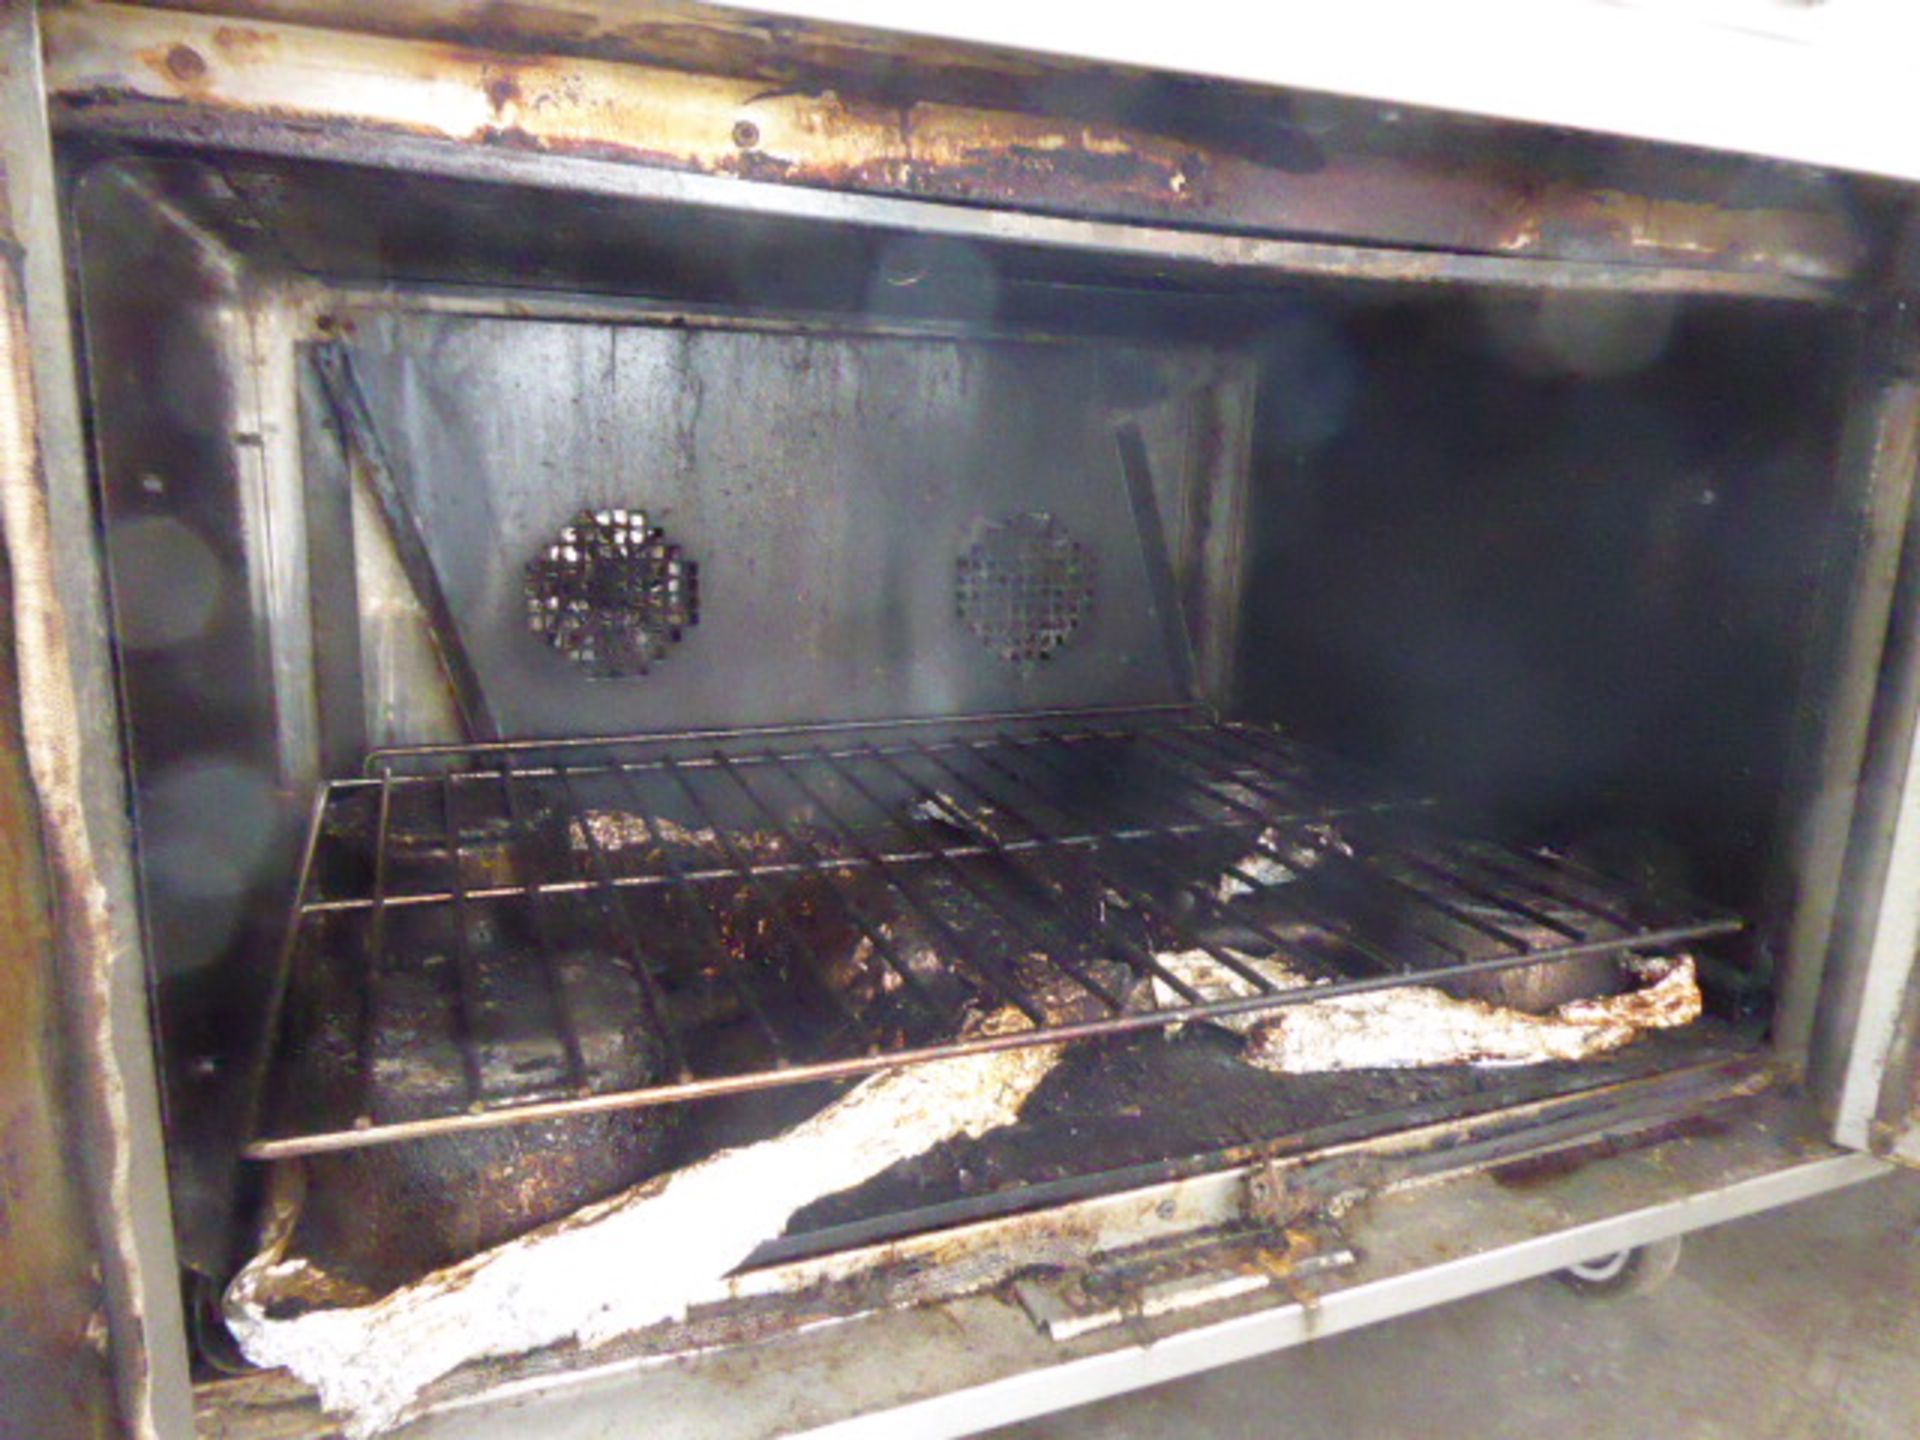 90cm gas Lincat 6 burner cooker with 2 door oven under - Image 3 of 3